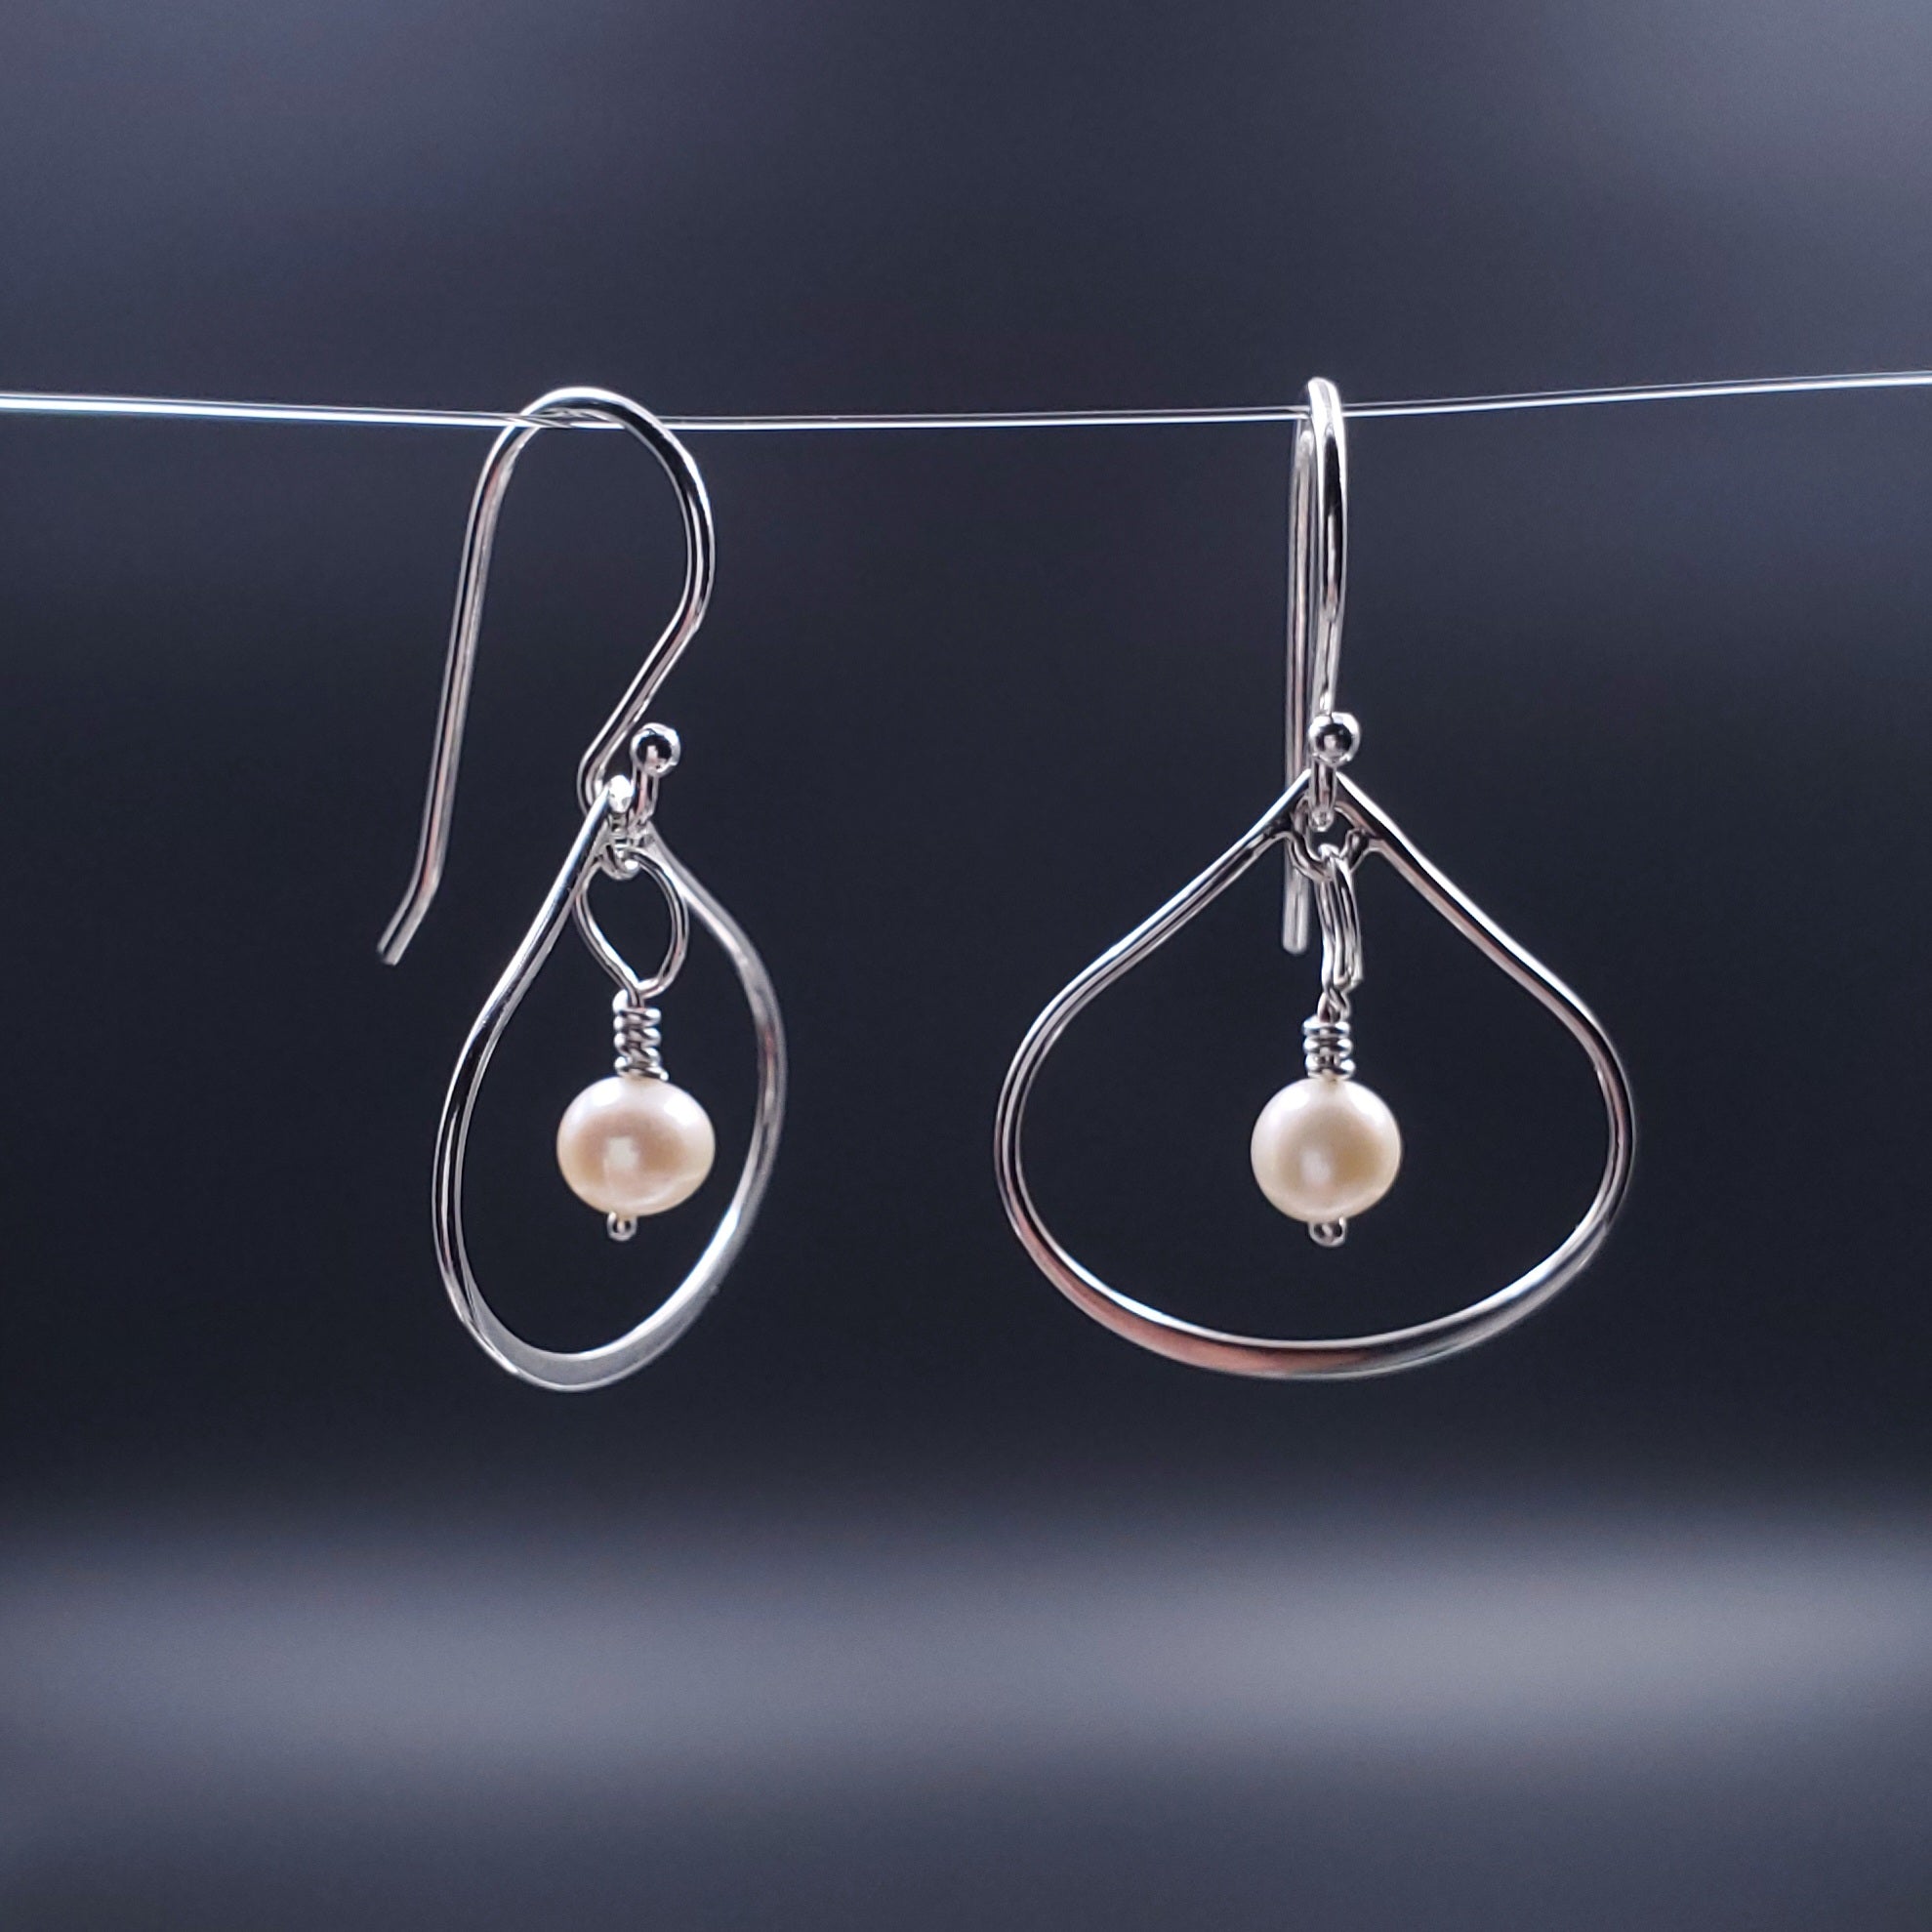 Silver wide teardrop earrings with fresh water pearls dangling in center